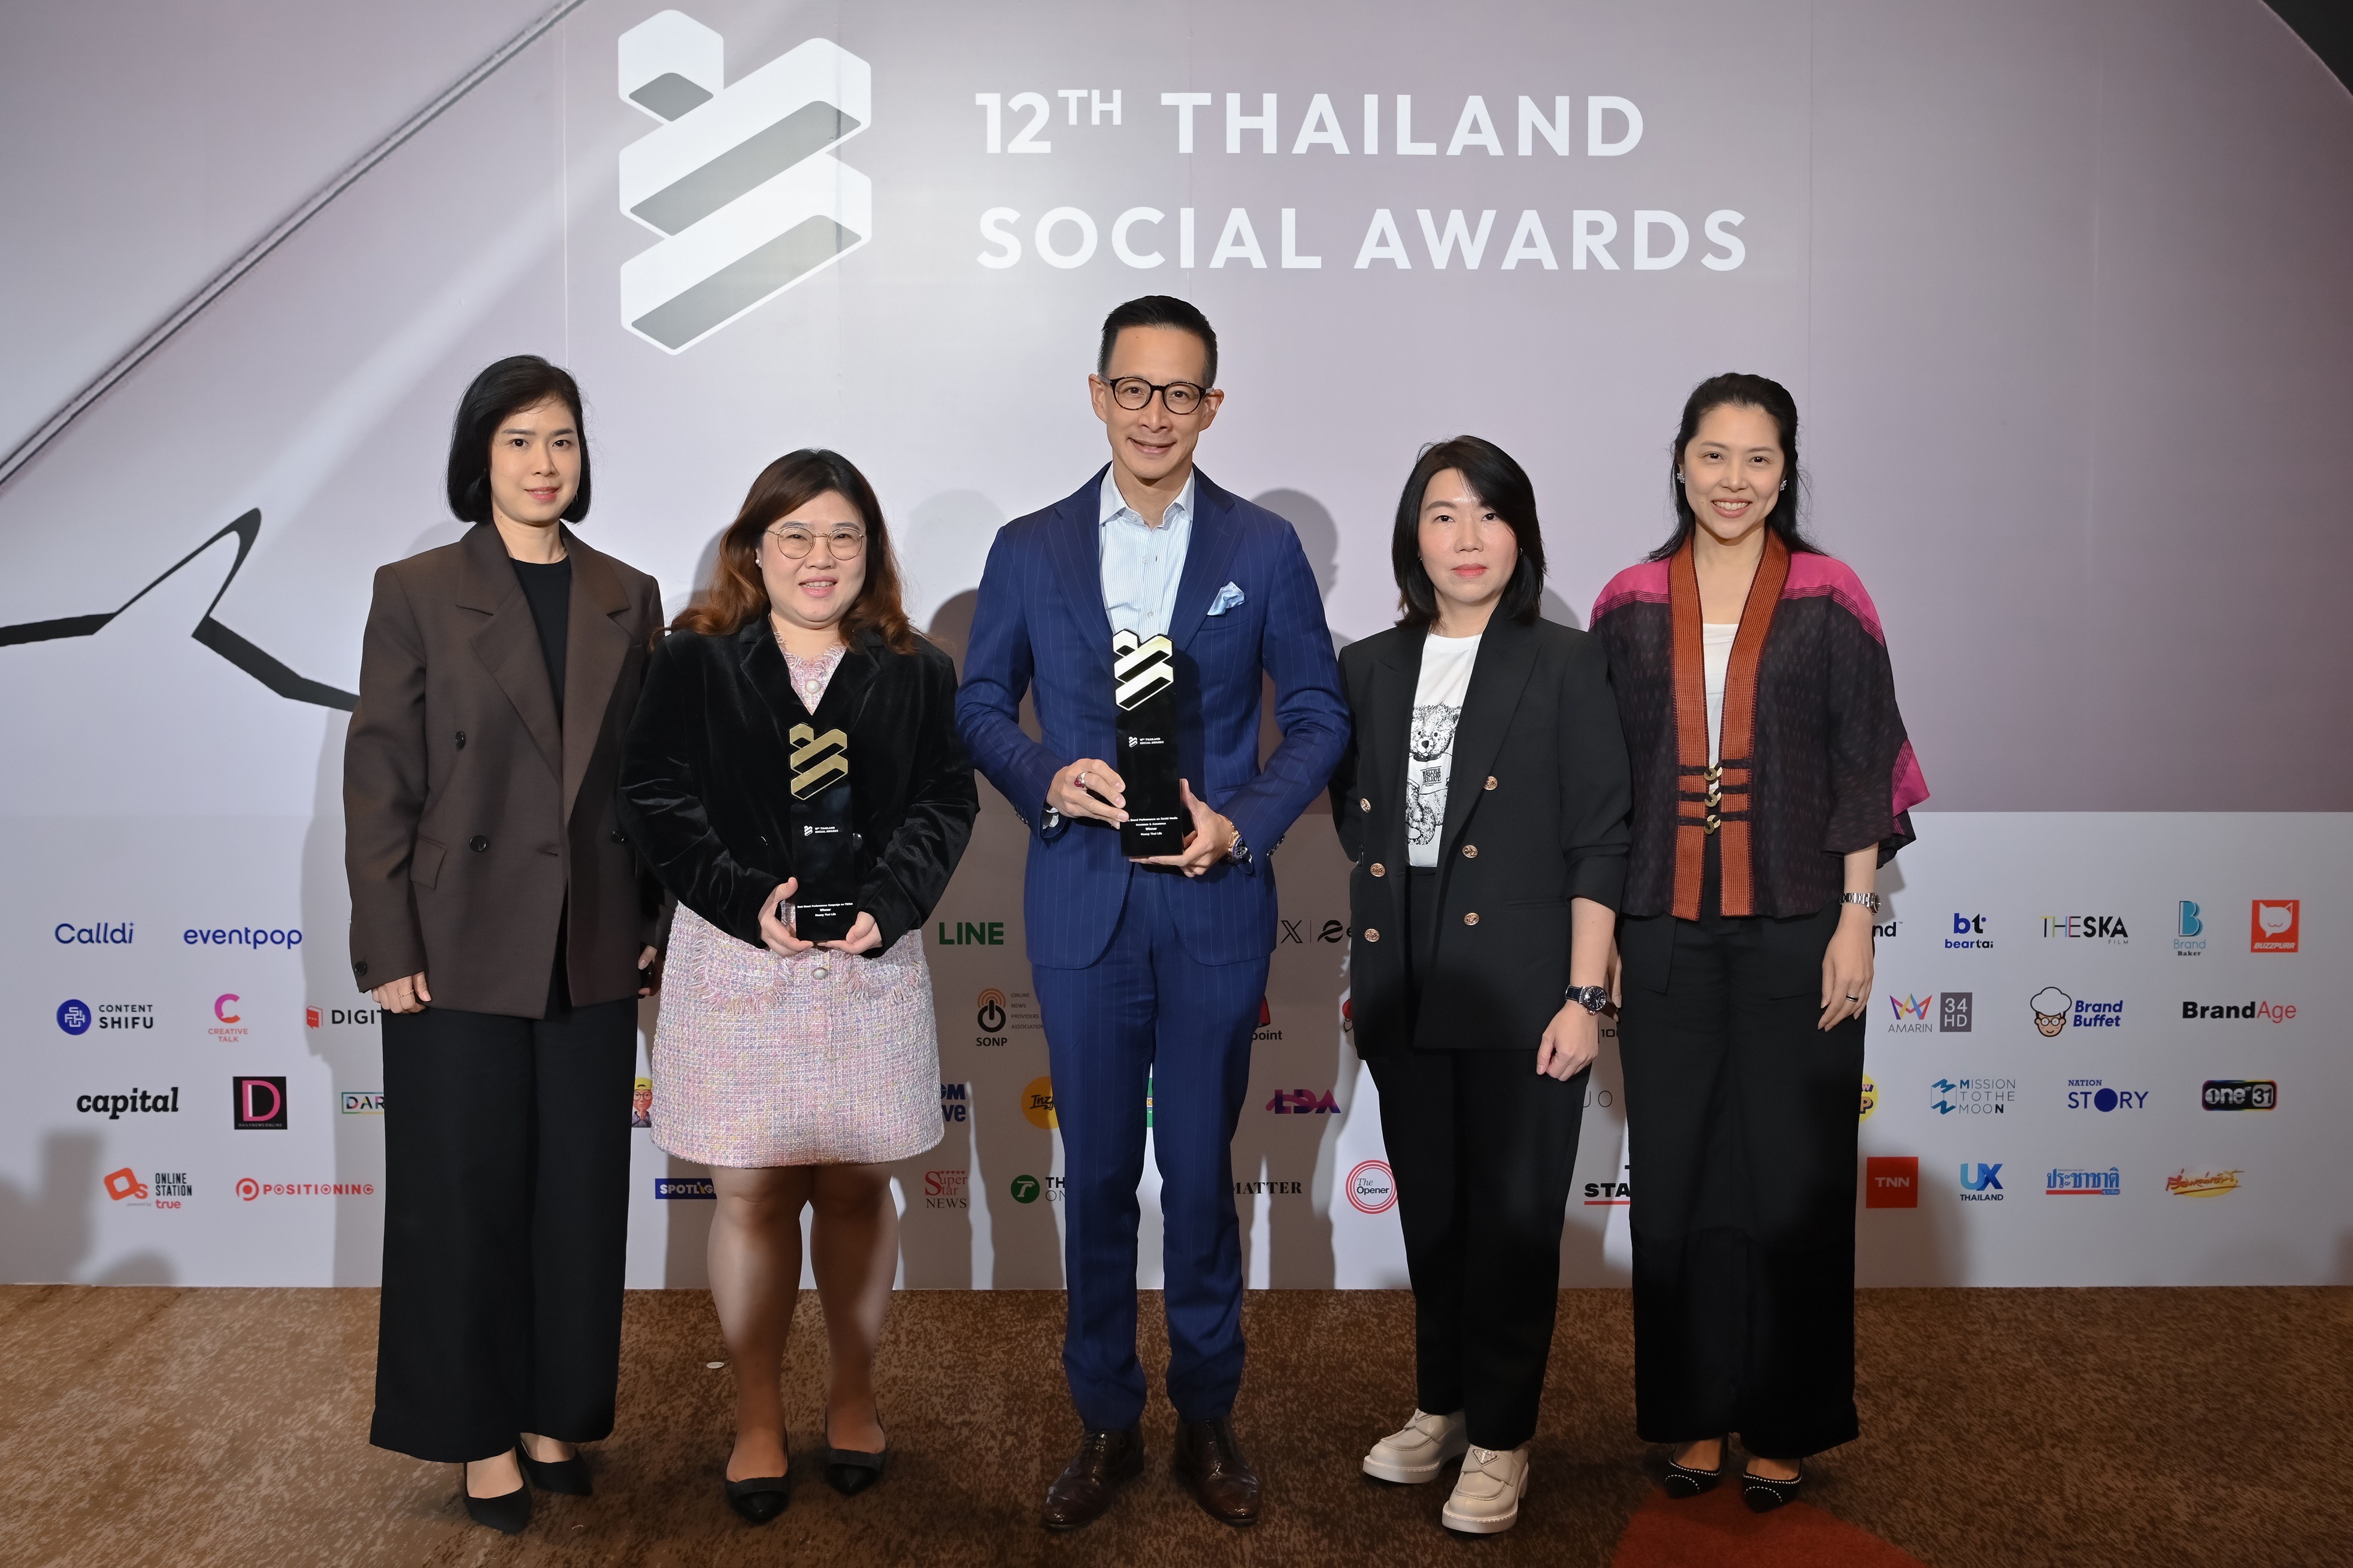 เมืองไทยประกันชีวิต คว้า 2 รางวัลใหญ่ จากเวที Thailand Social Awards ครั้งที่ 12 Best Brand Performance on Social Mediaสาขา Insurance & Assurance และ Best Brand Performance Campaign on TikTok